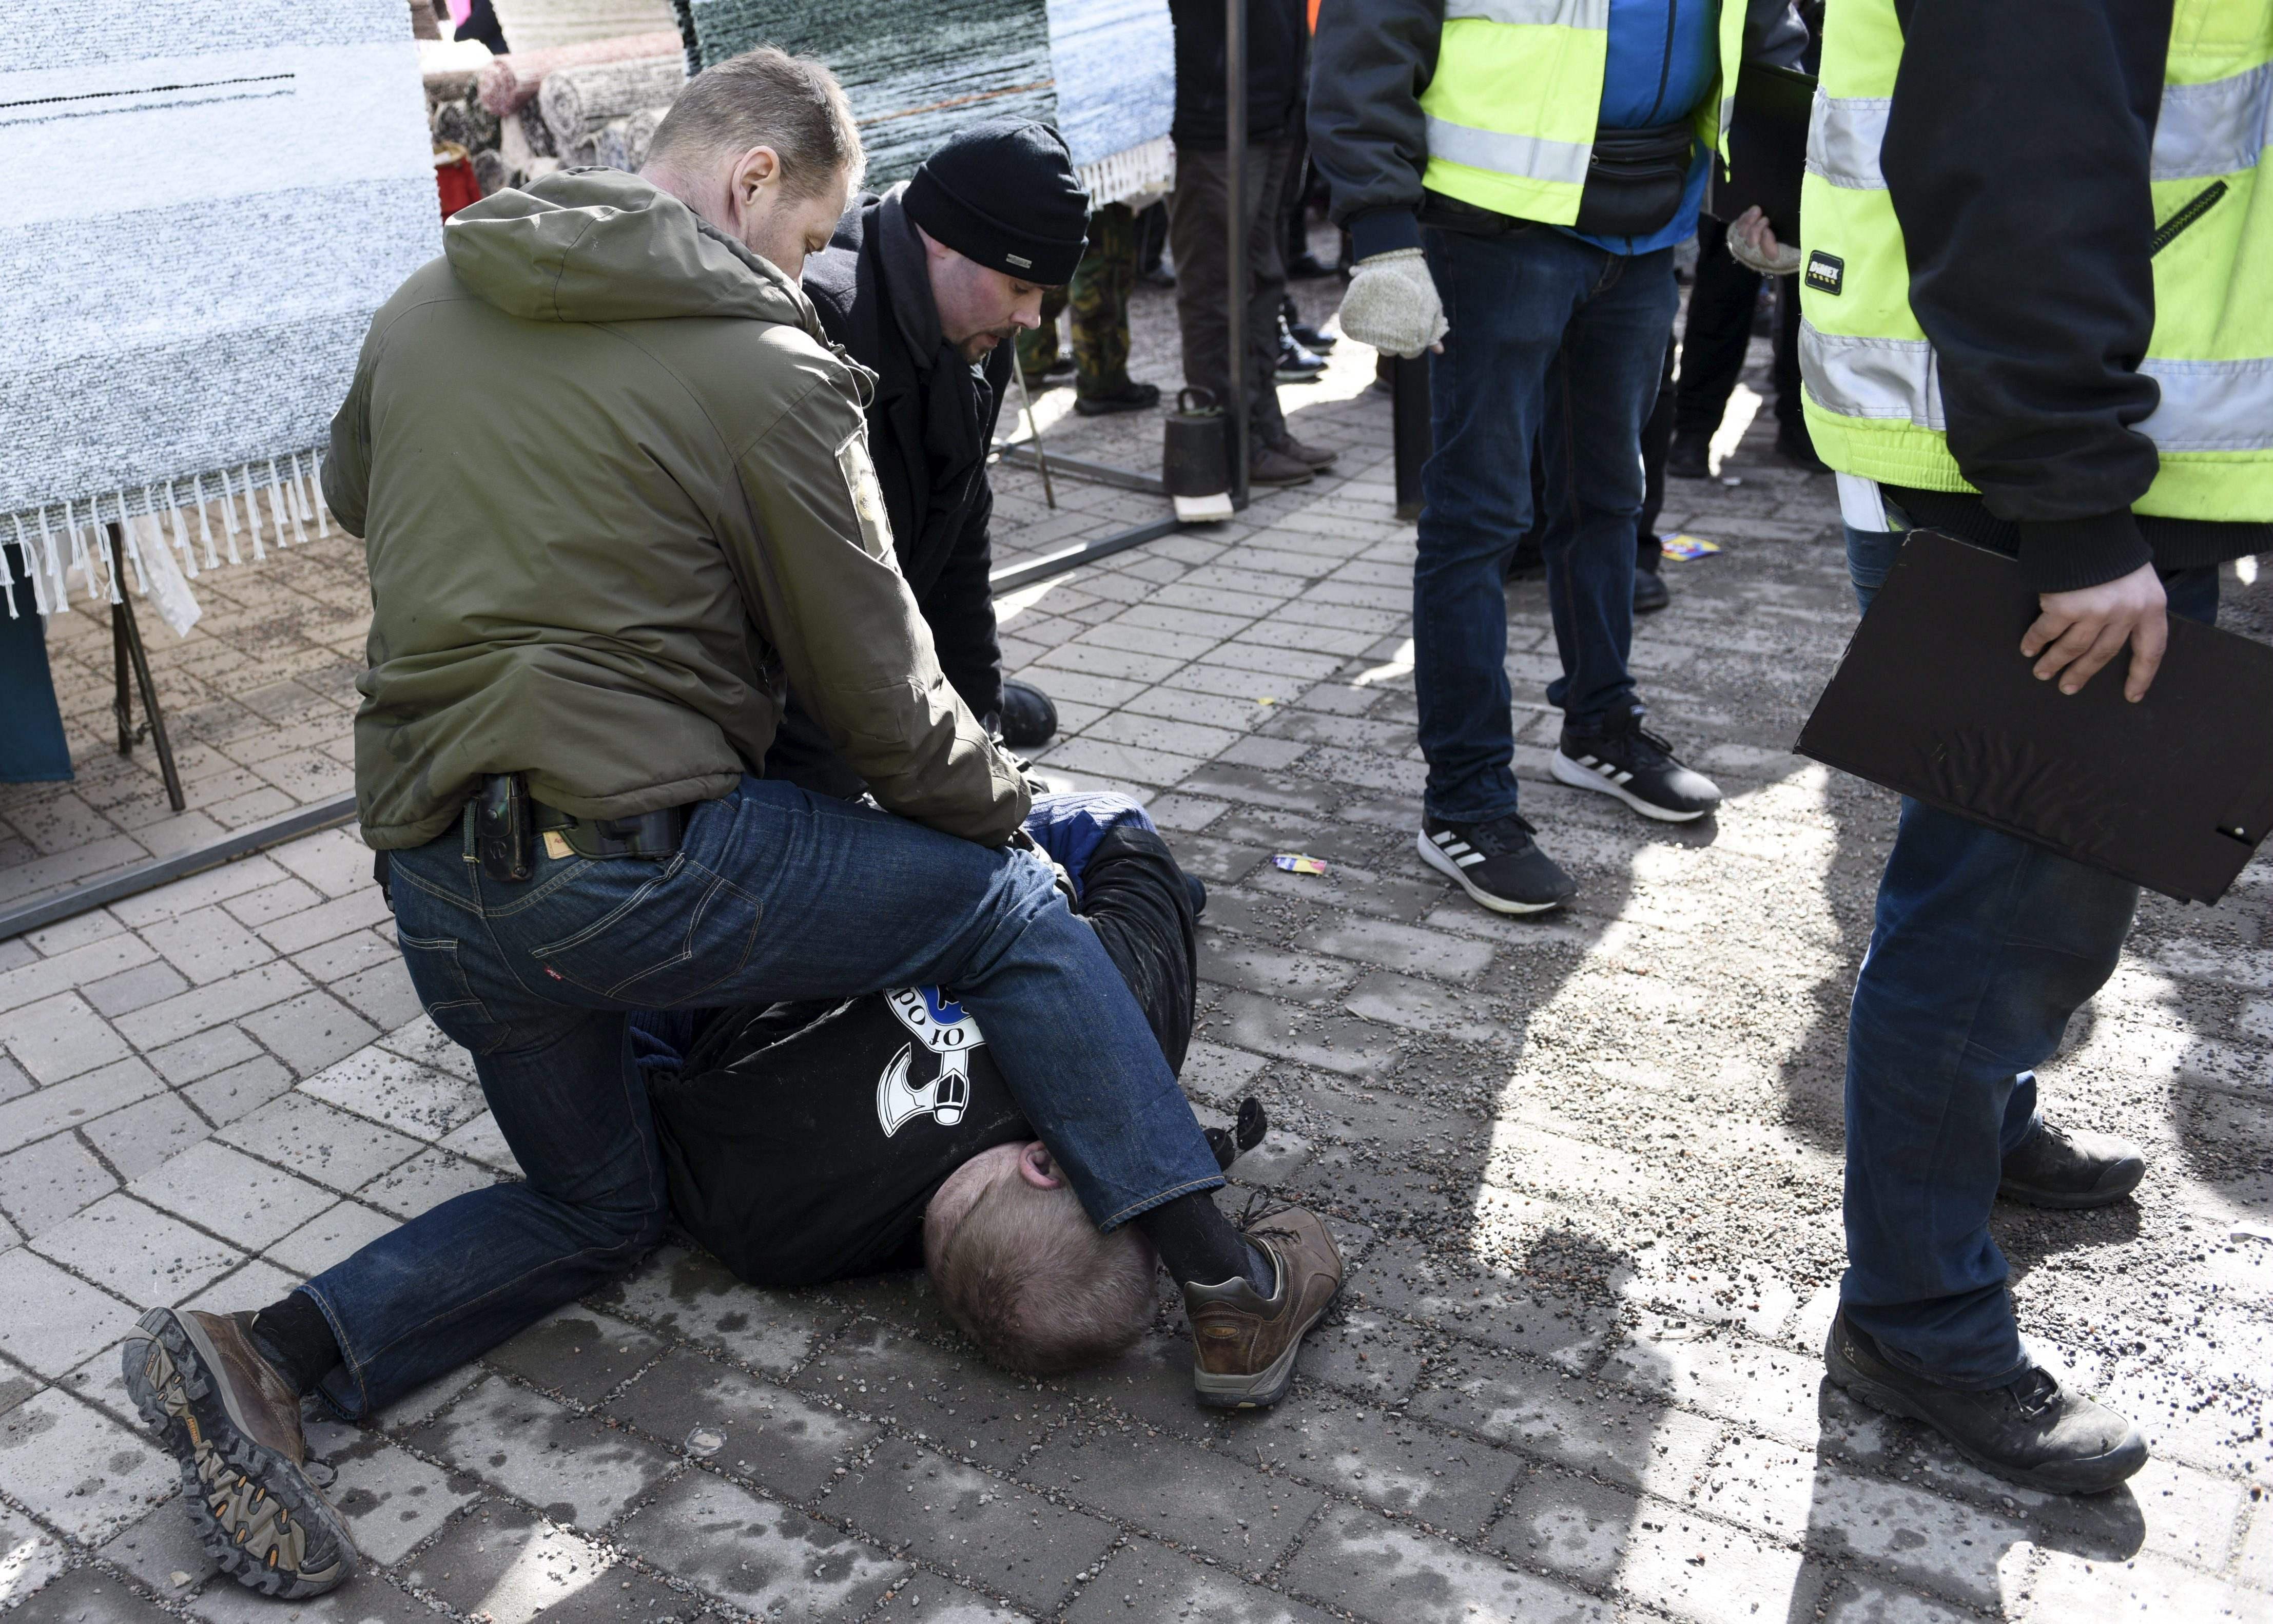 Finlandiya Dışişleri Bakanına saldırmak isteyen bir kişi gözaltına alındı